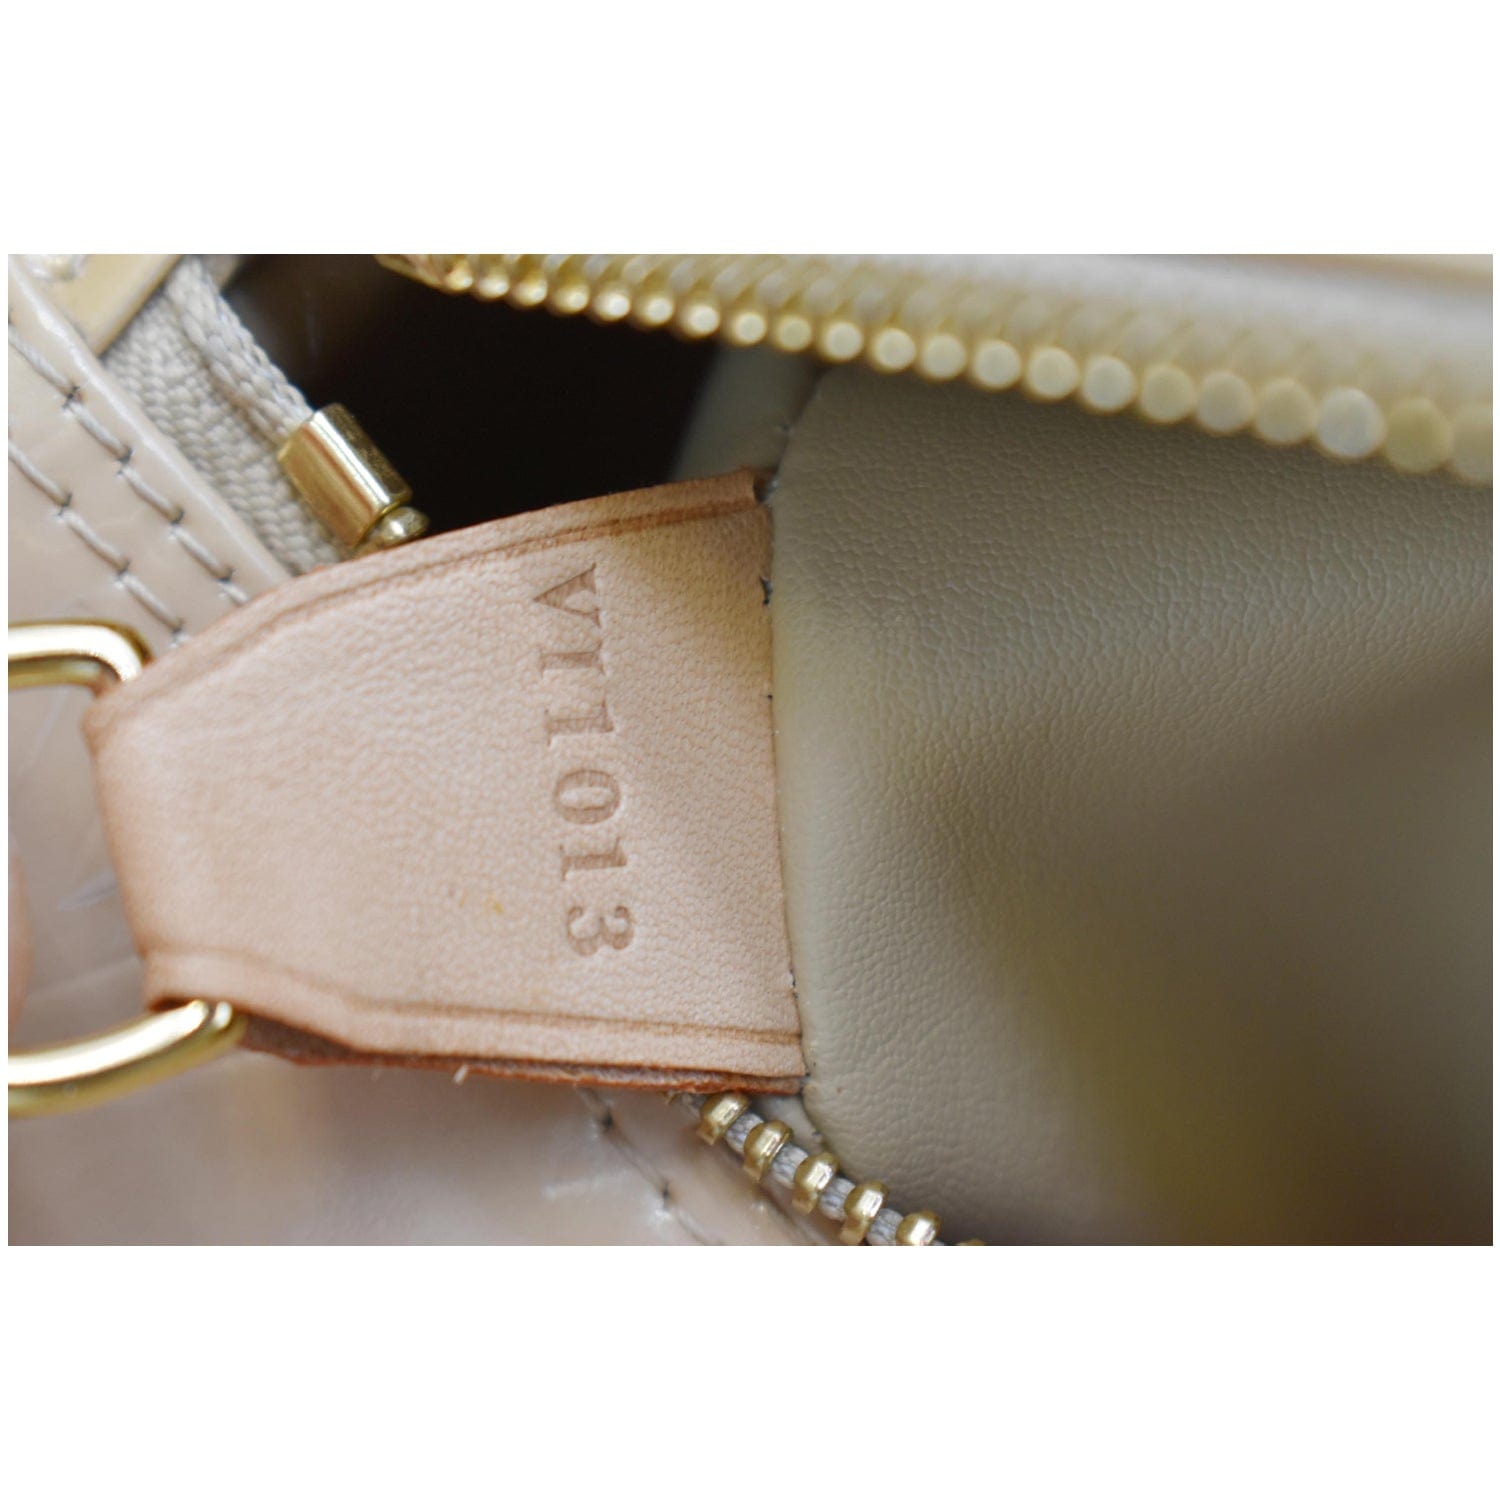 Louis Vuitton Papillon Vernis Handbag